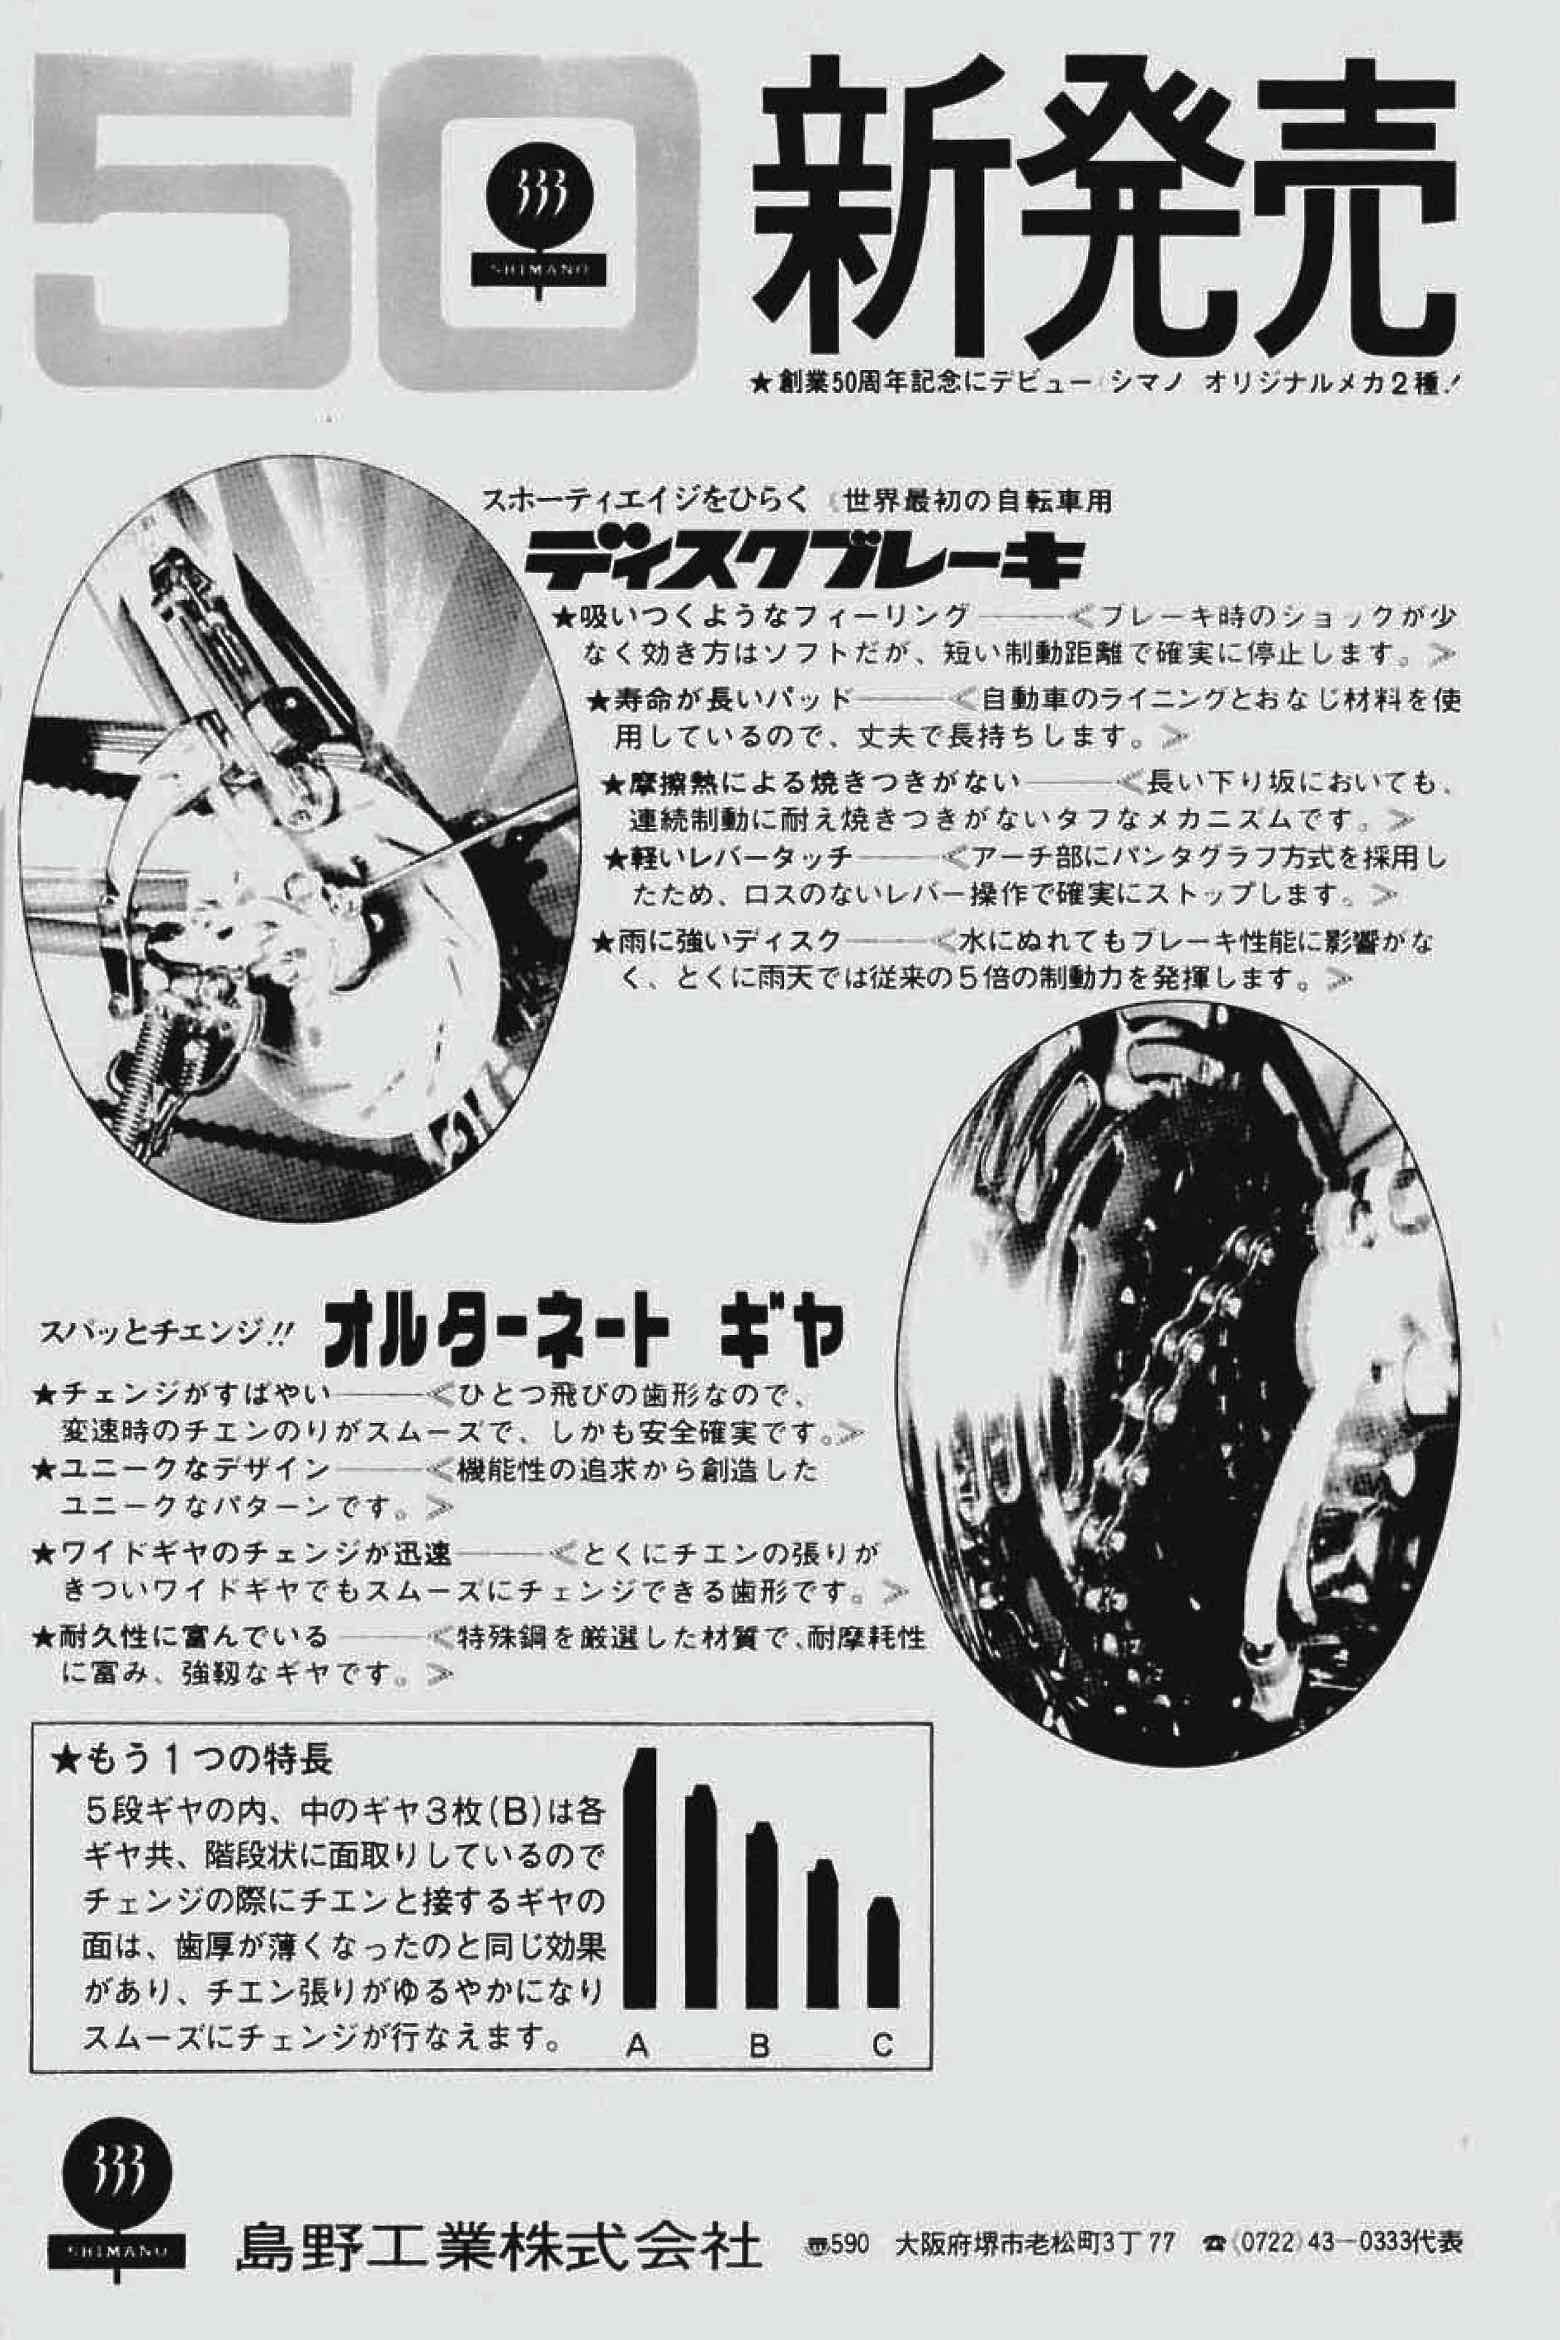 New Cycling December 1971 - Shimano advert main image